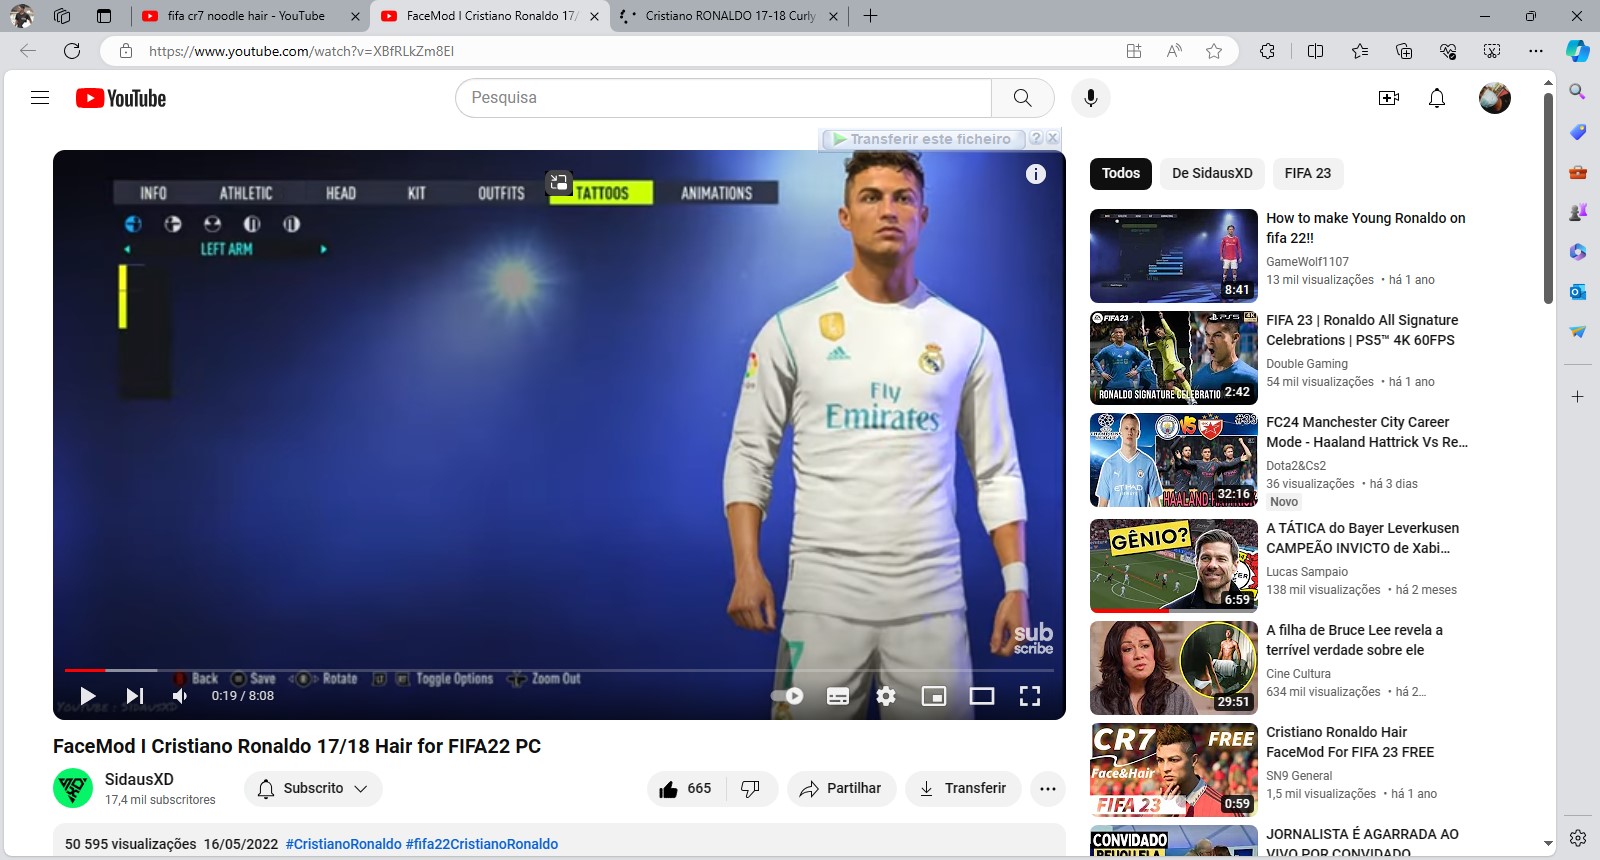 FaceMod I Cristiano Ronaldo 17_18 Hair for FIFA22 PC - YouTube e mais 2 páginas - Pessoal - Mi...jpg